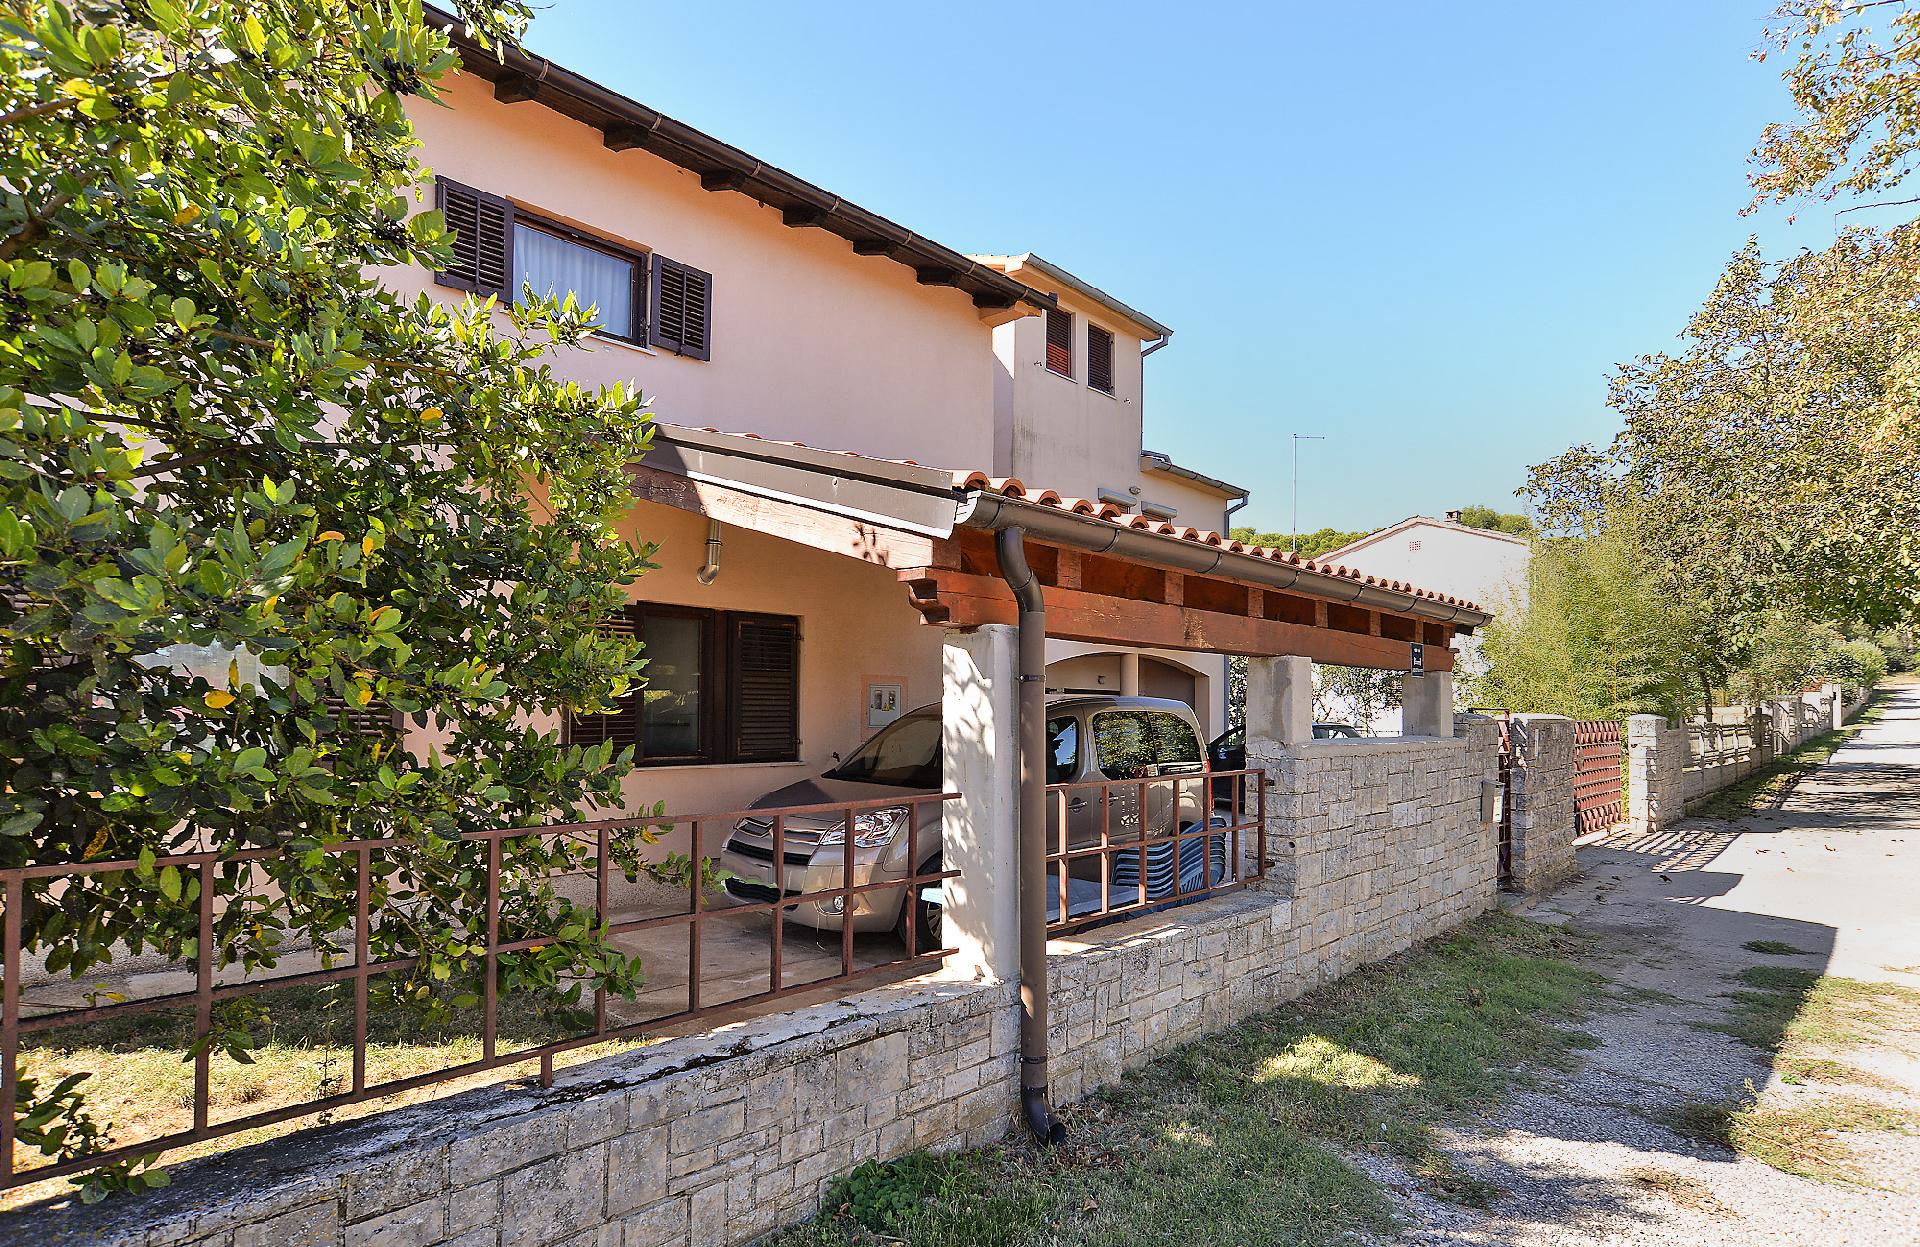 Ferienwohnung für 5 Personen ca. 50 m² i  in Istrien